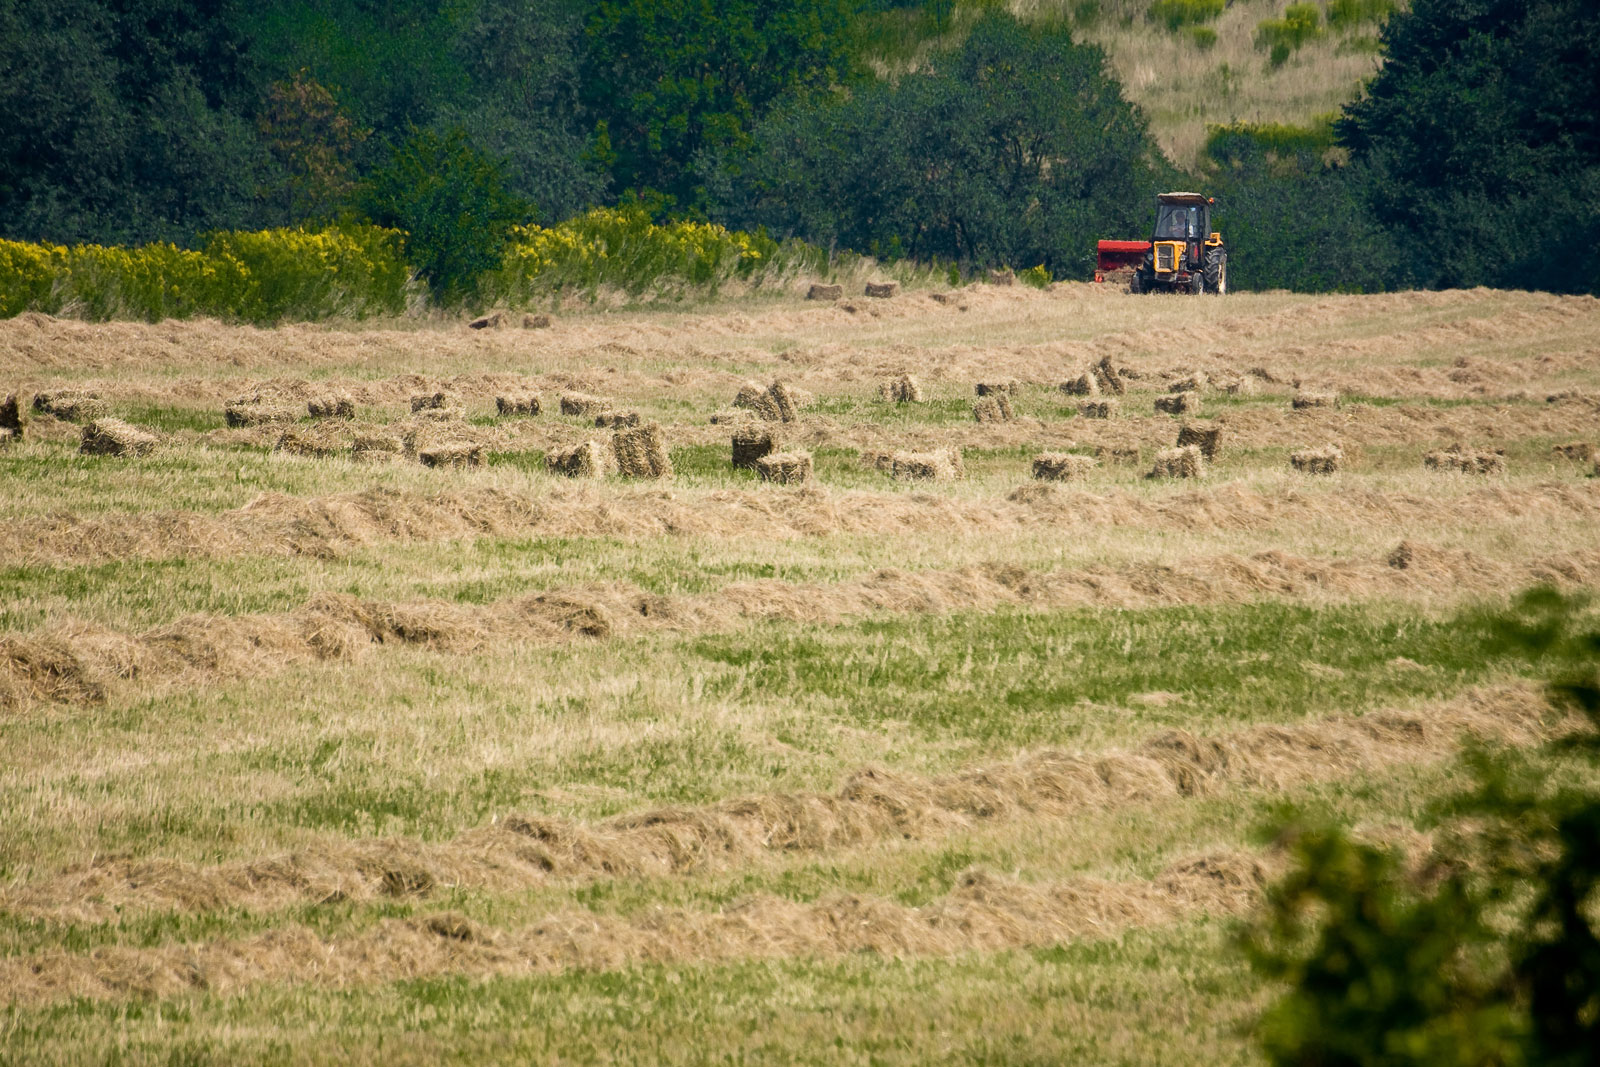 zbieranie siana latem na polach w Mogilanach pod Krakowem przy pomocy ciągnika i prasowalnicy